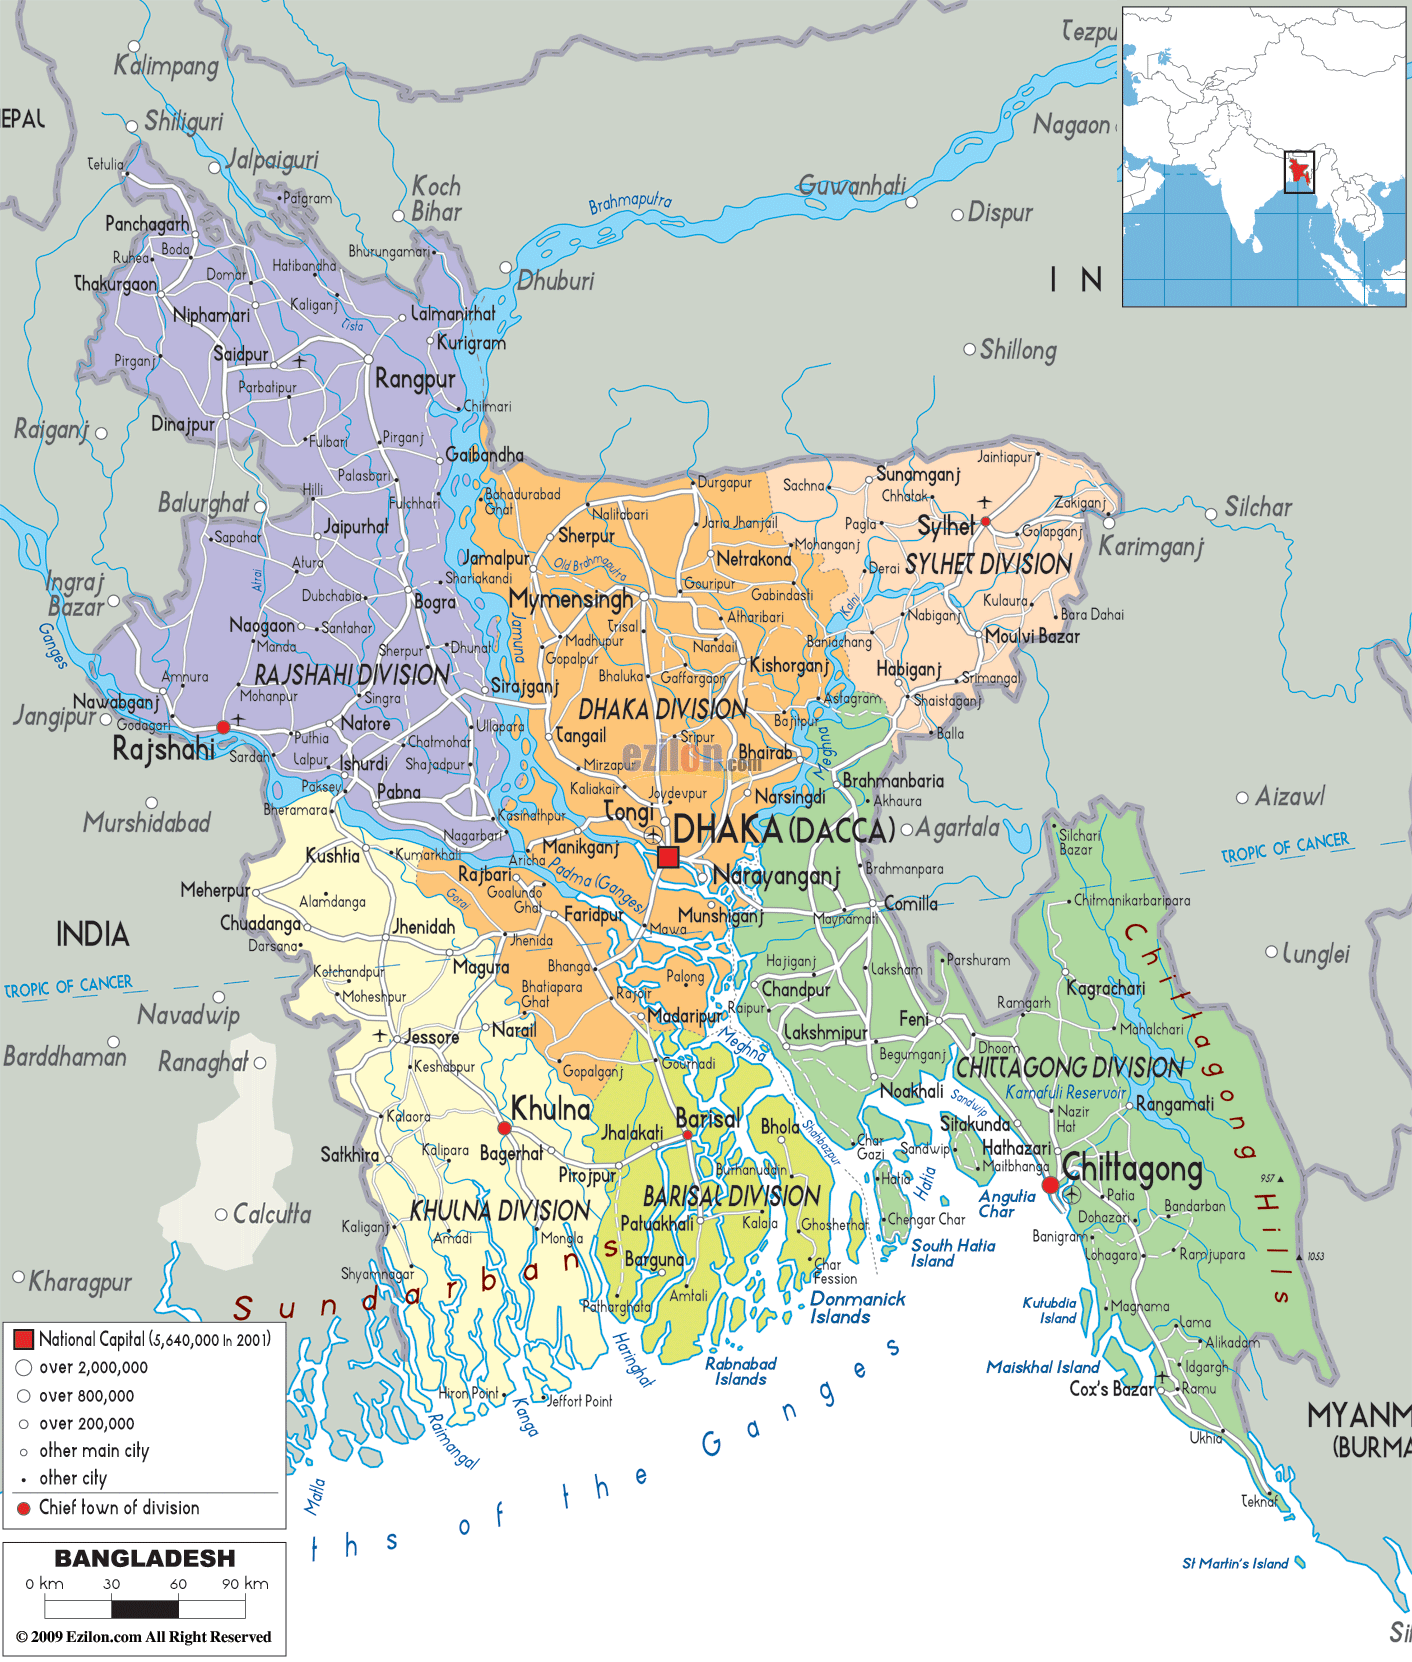 Map of Bangladesh_5.jpg